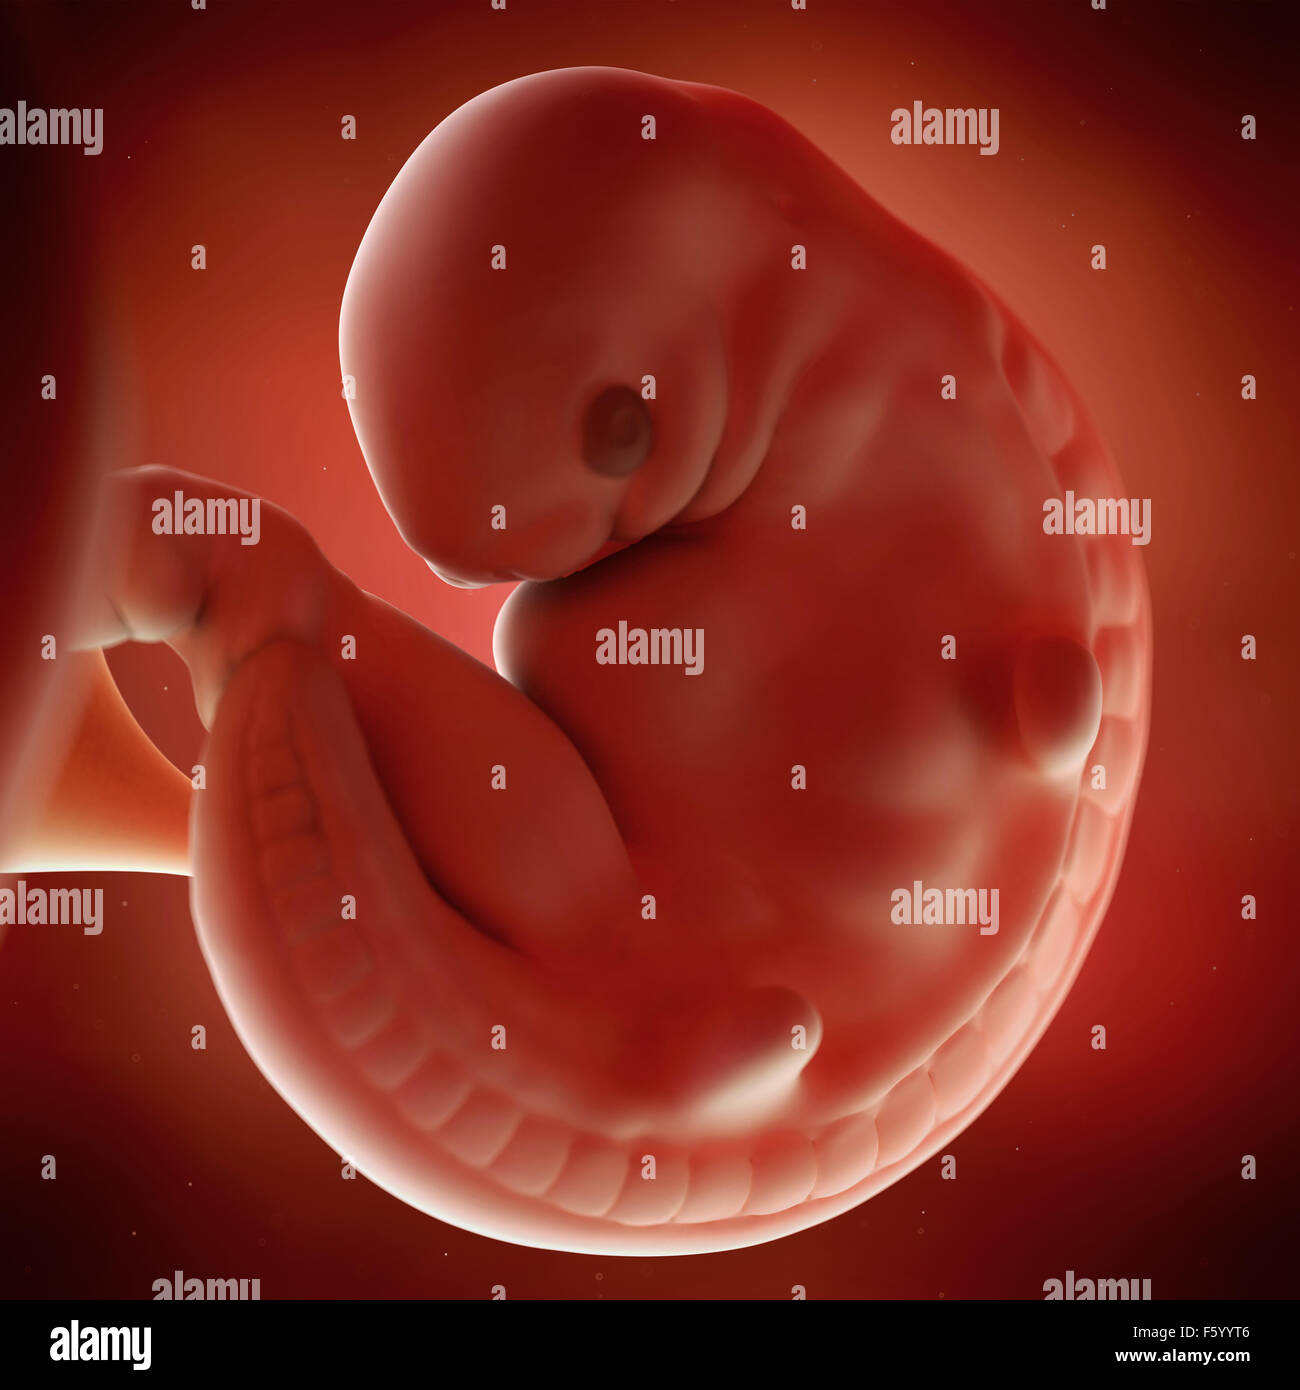 Précision médicale 3d illustration d'un foetus semaine 6 Banque D'Images